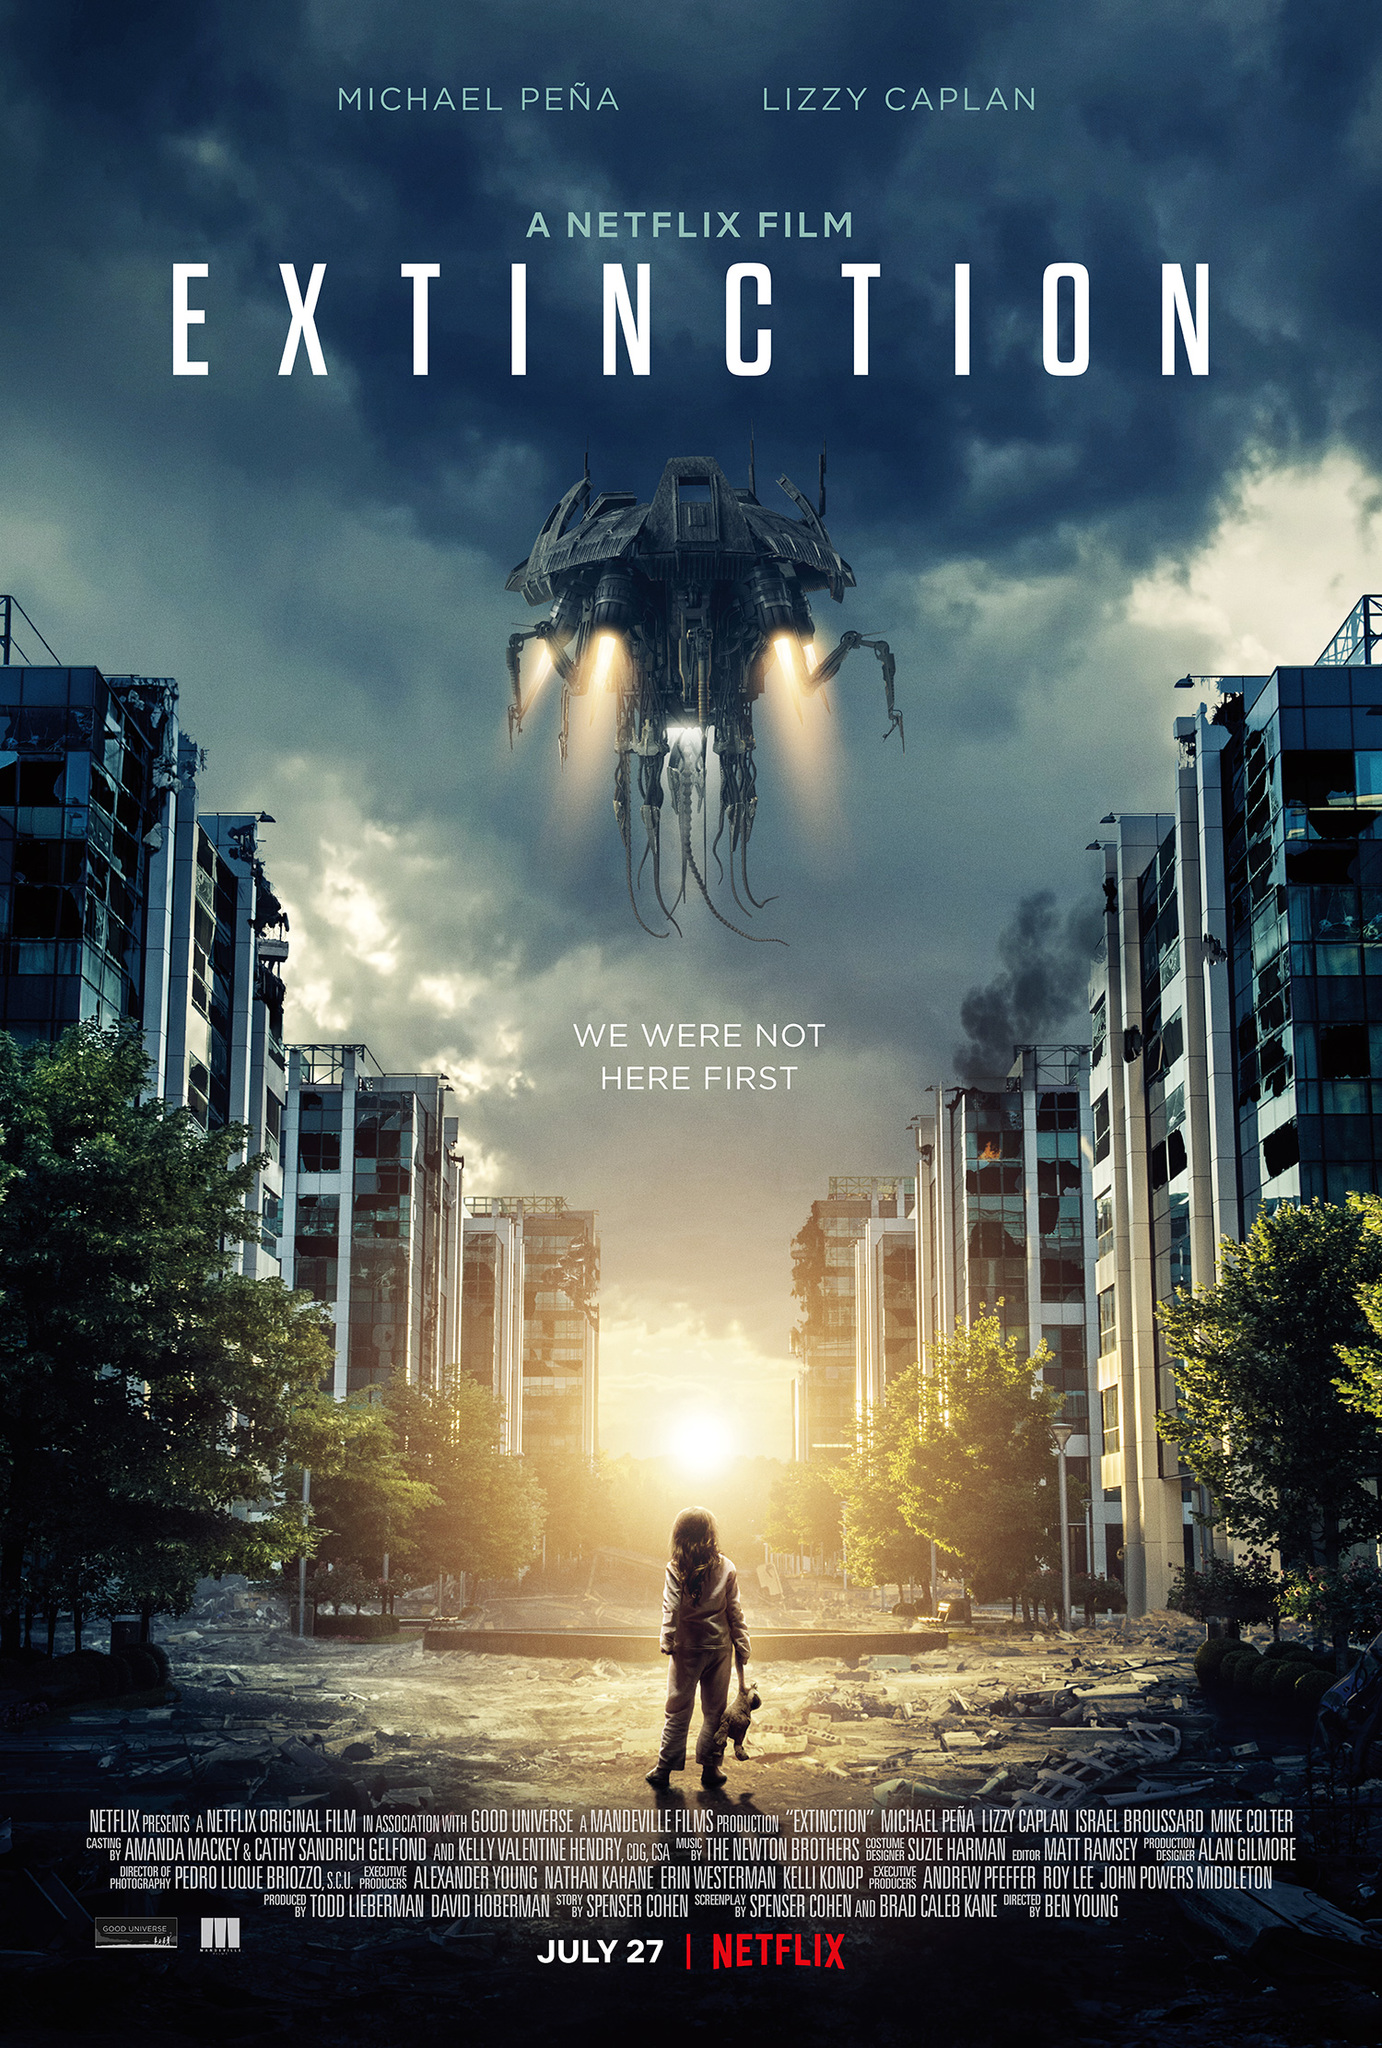 ดูหนังออนไลน์ Extinction (2018) ฝันร้าย ภัยสูญพันธุ์